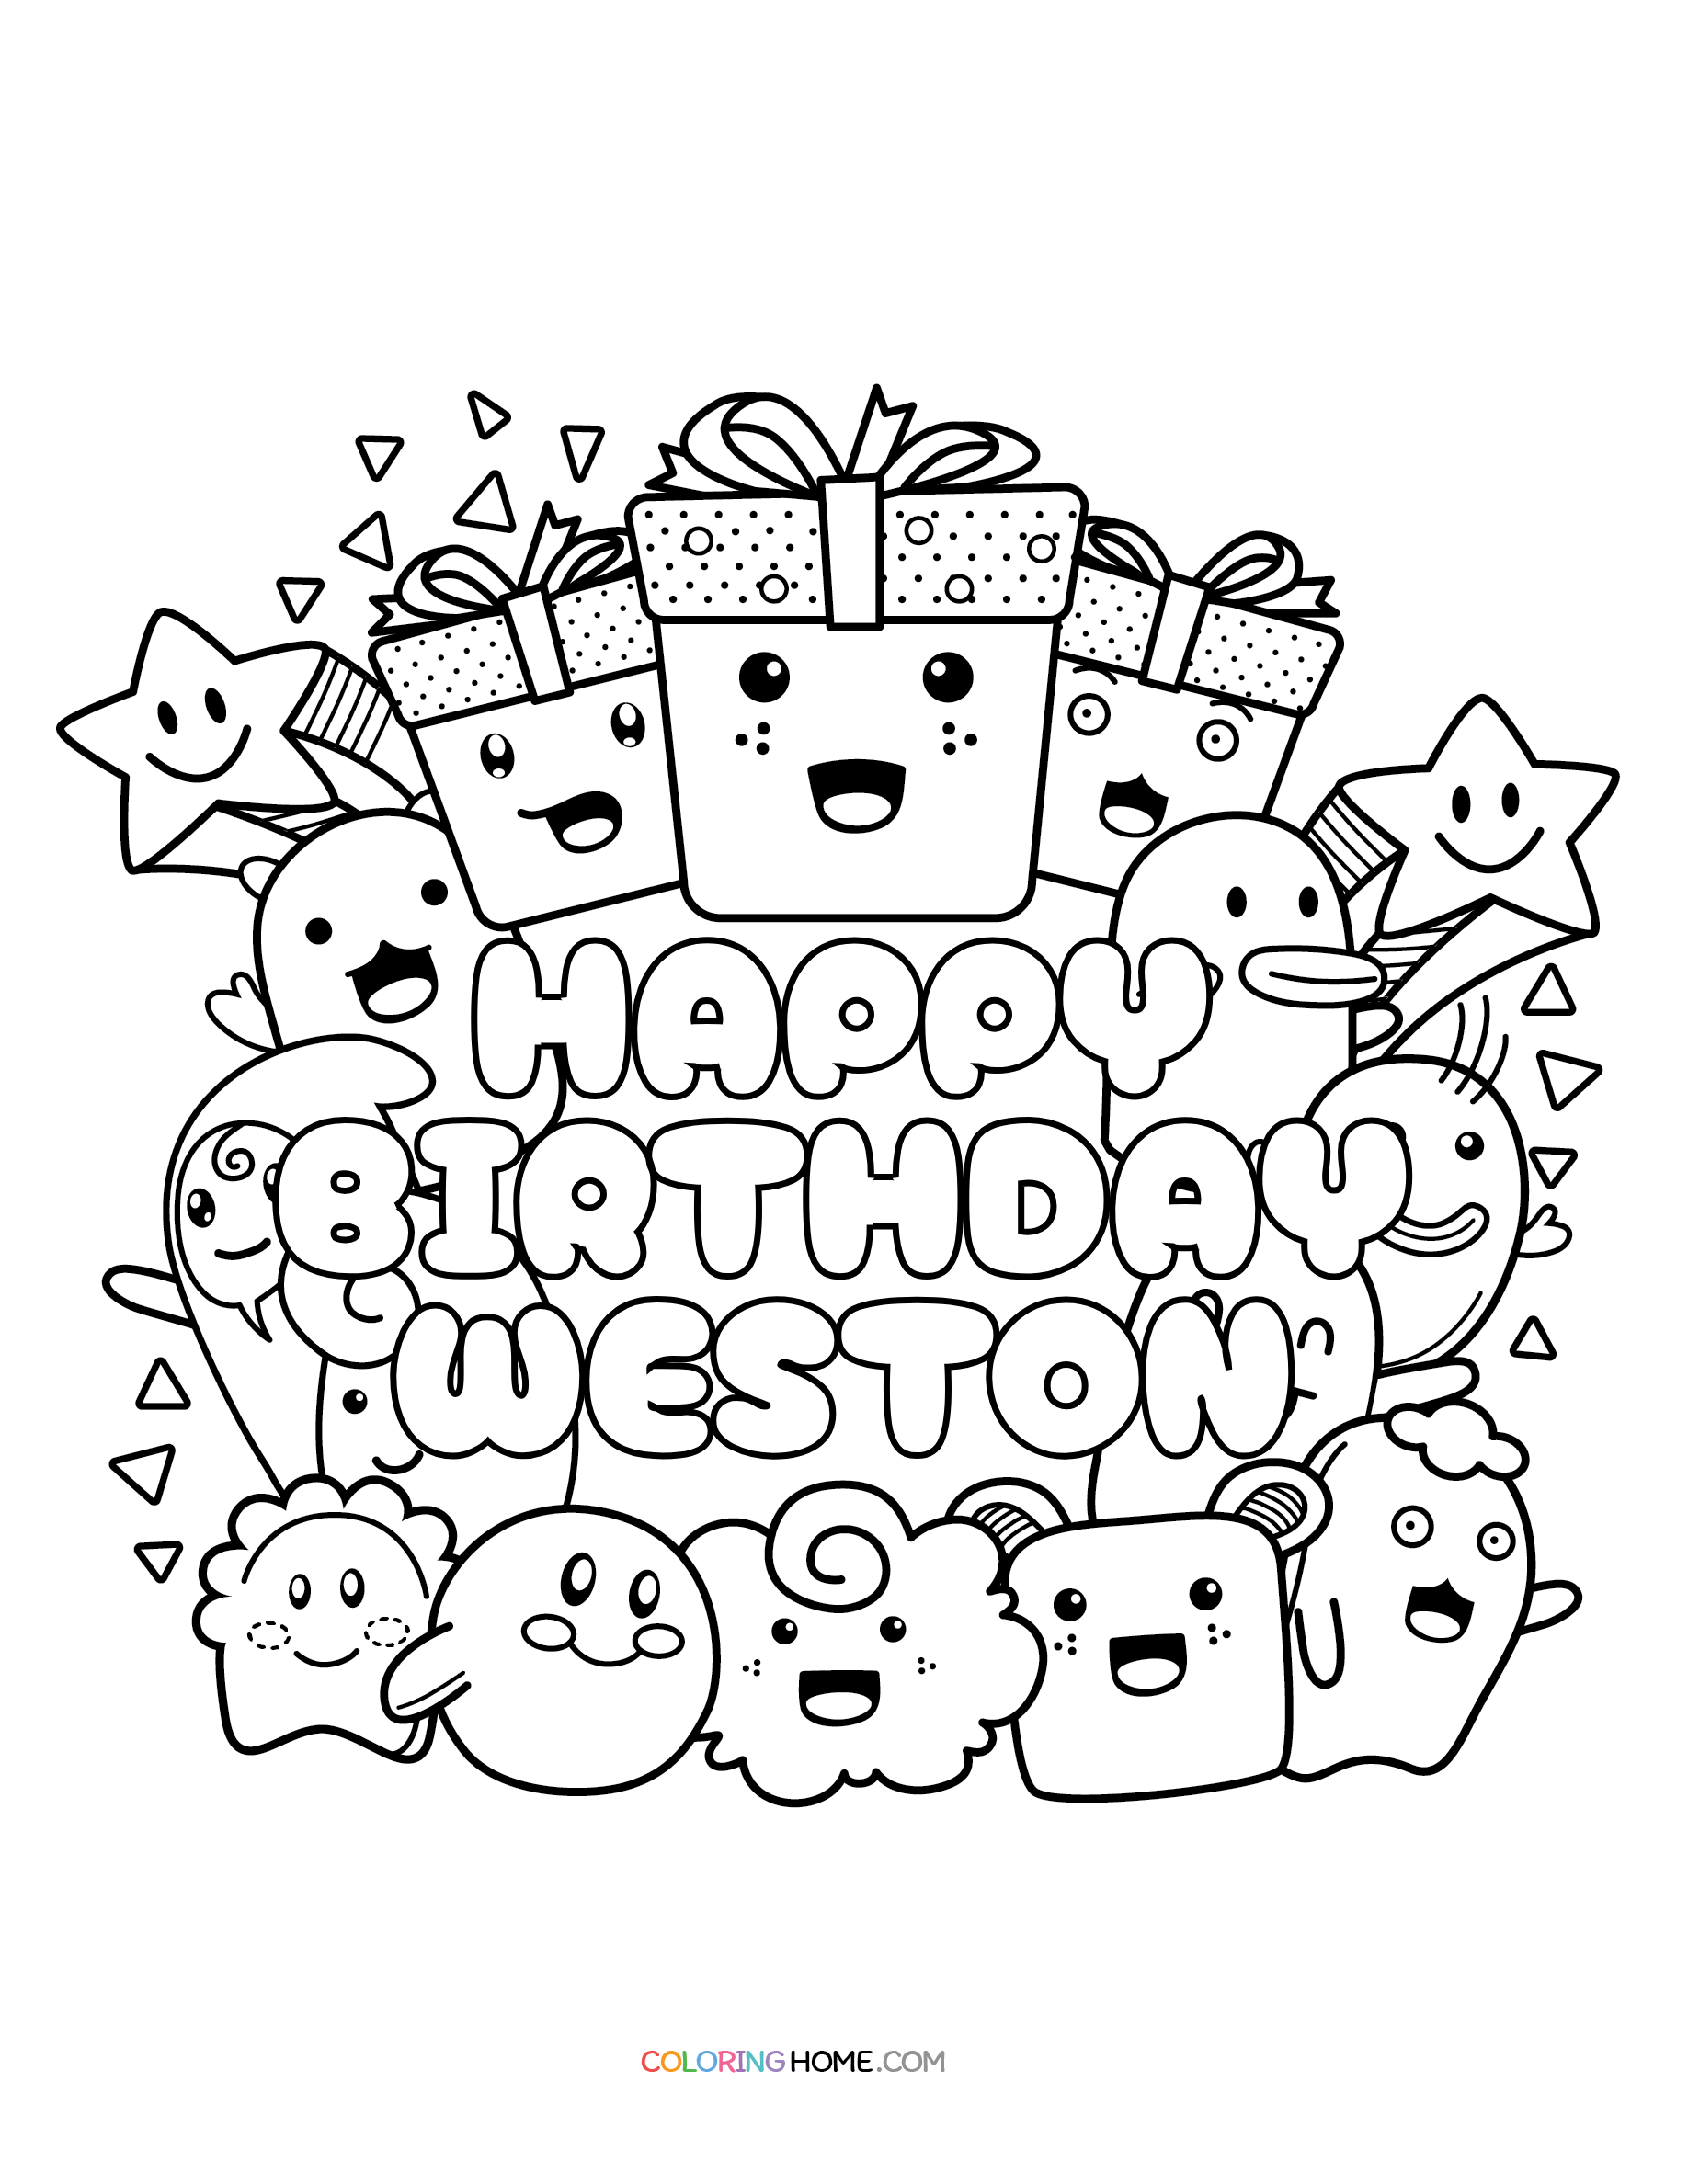 Happy Birthday Weston coloring page